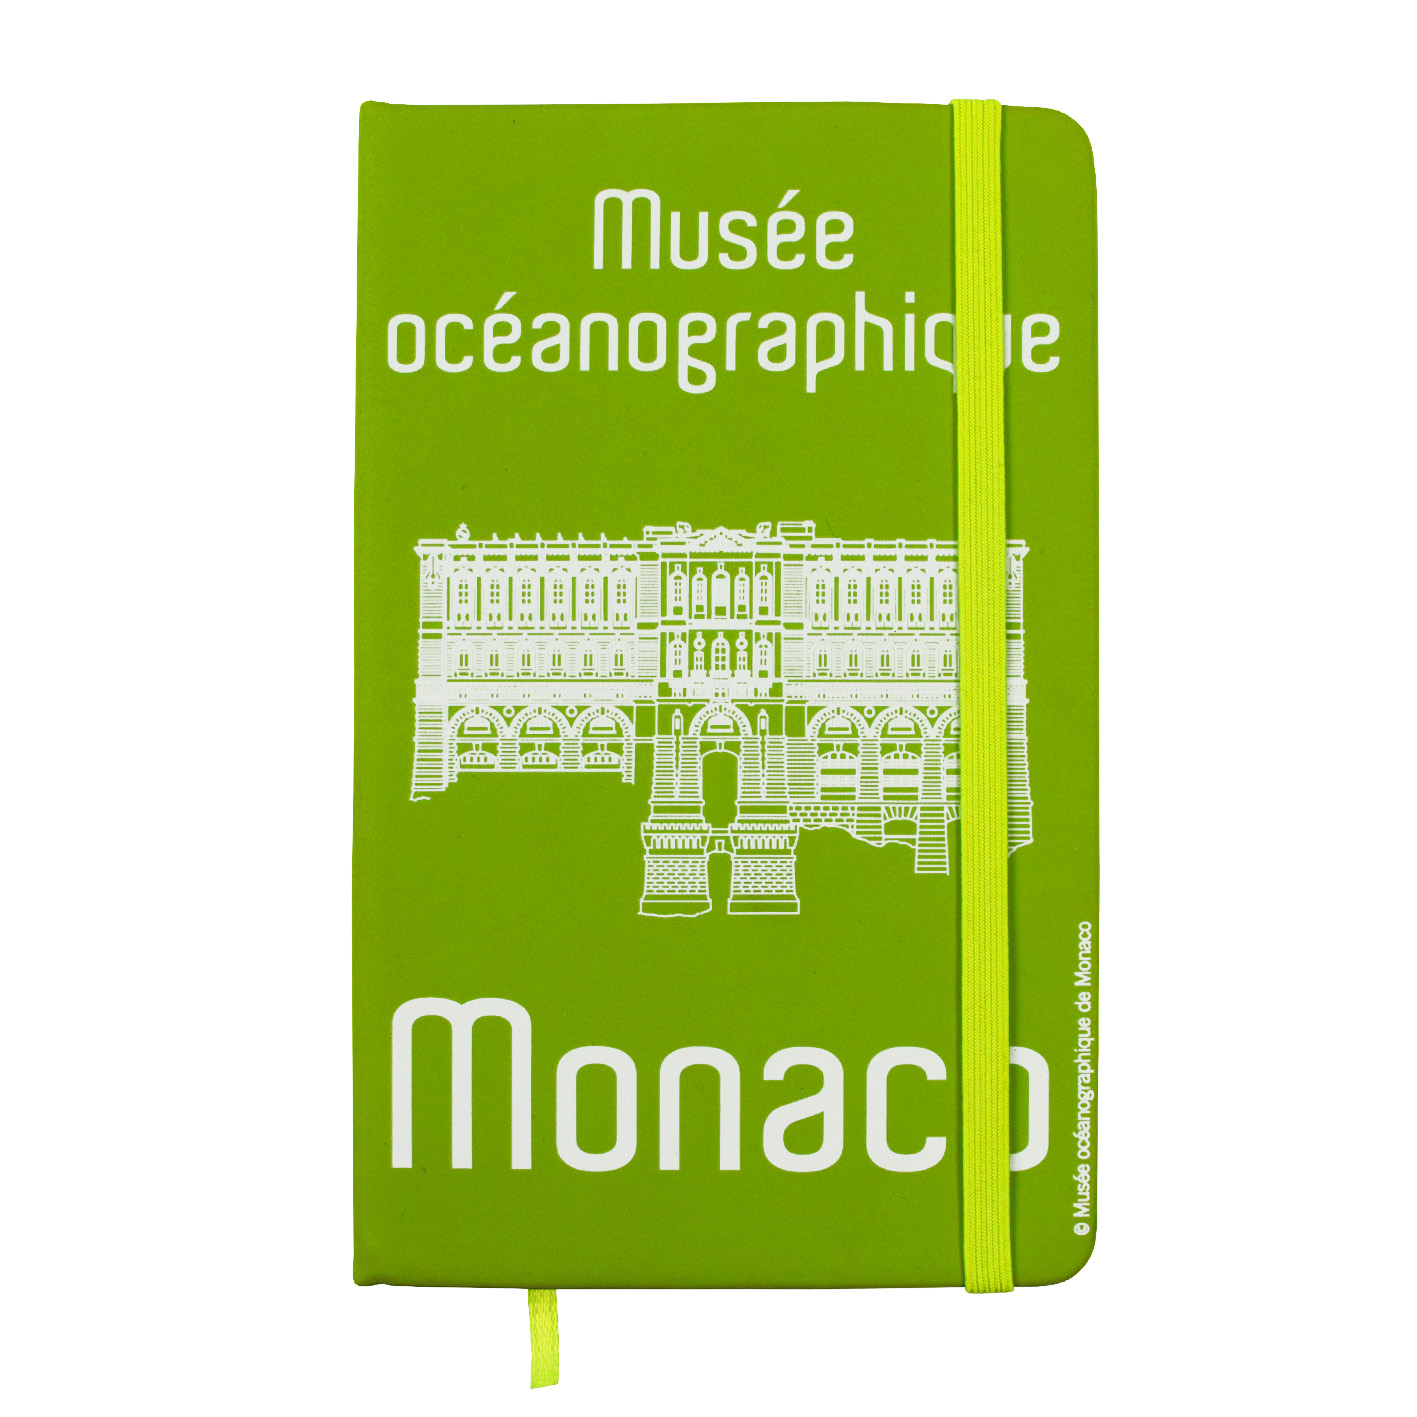 Magnete personalizzato bambino del Museo Oceanografico di Monaco